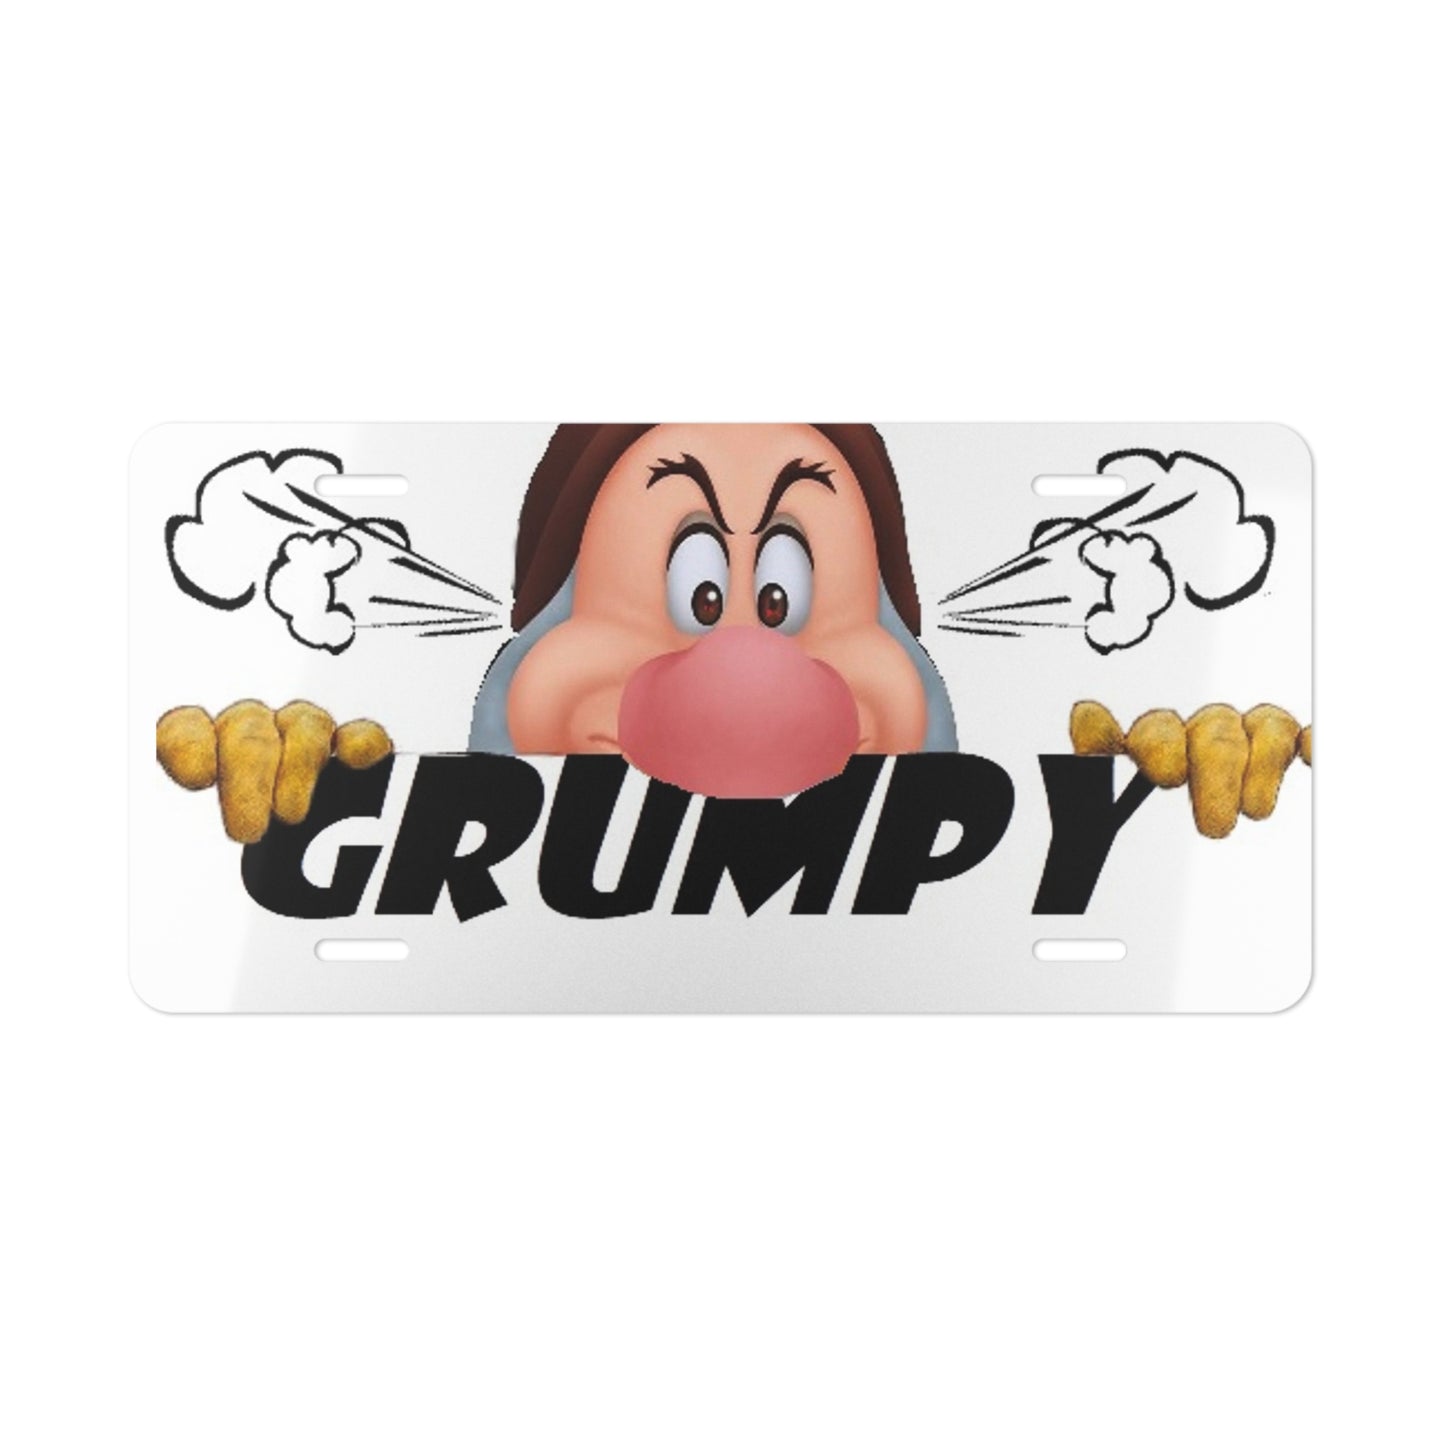 Grumpy Vanity License Plate